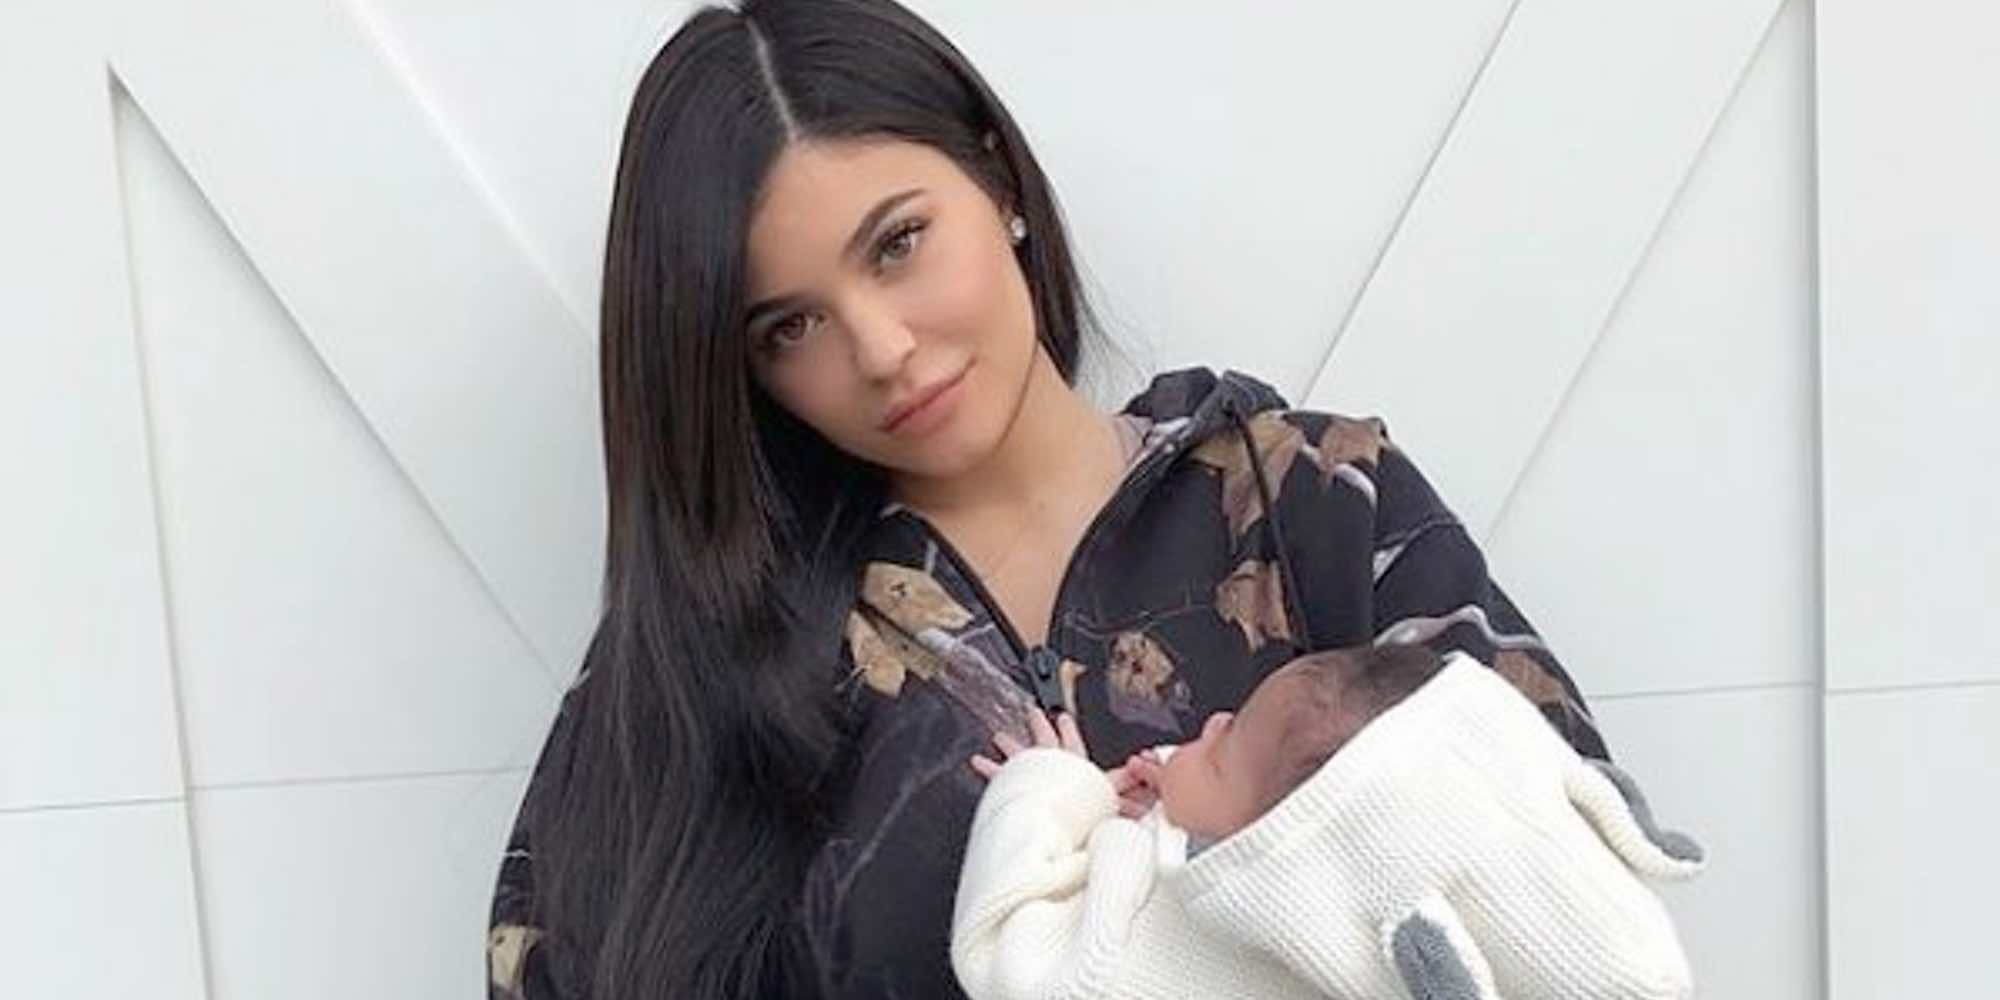 La maternidad hace olvidarse a Kylie Jenner de su faceta influencer